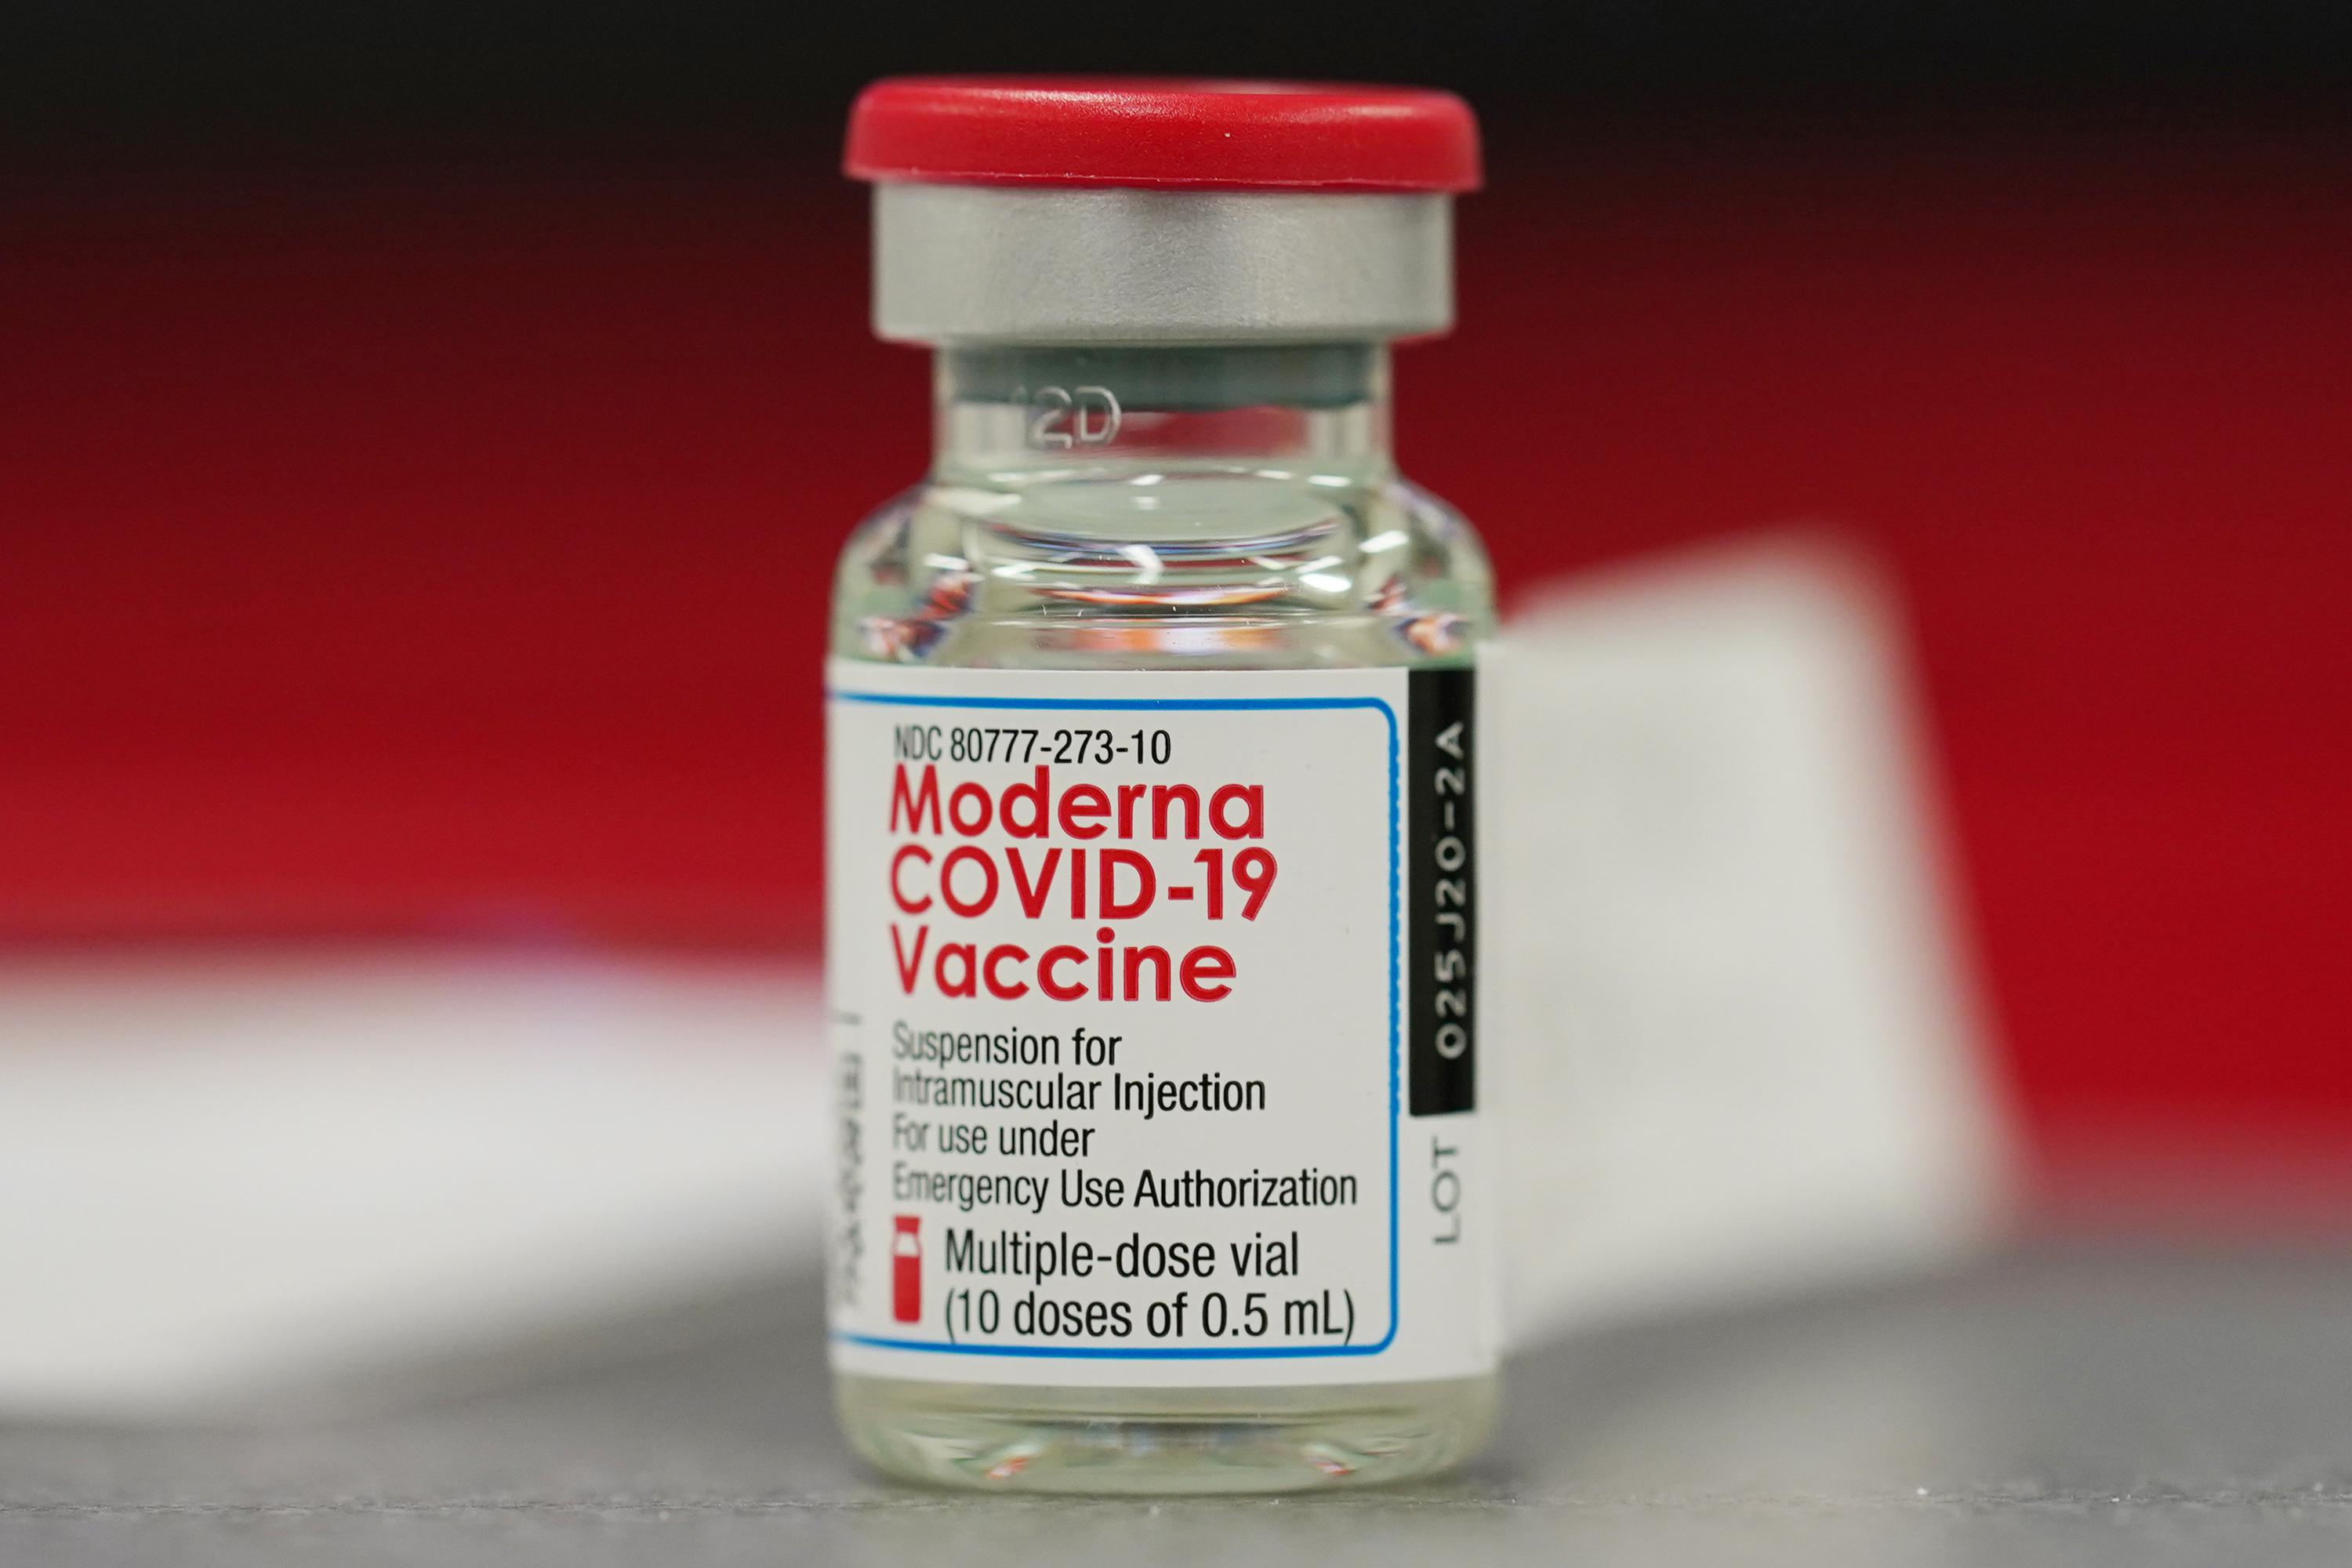 Covid-19 vaccine booster shots